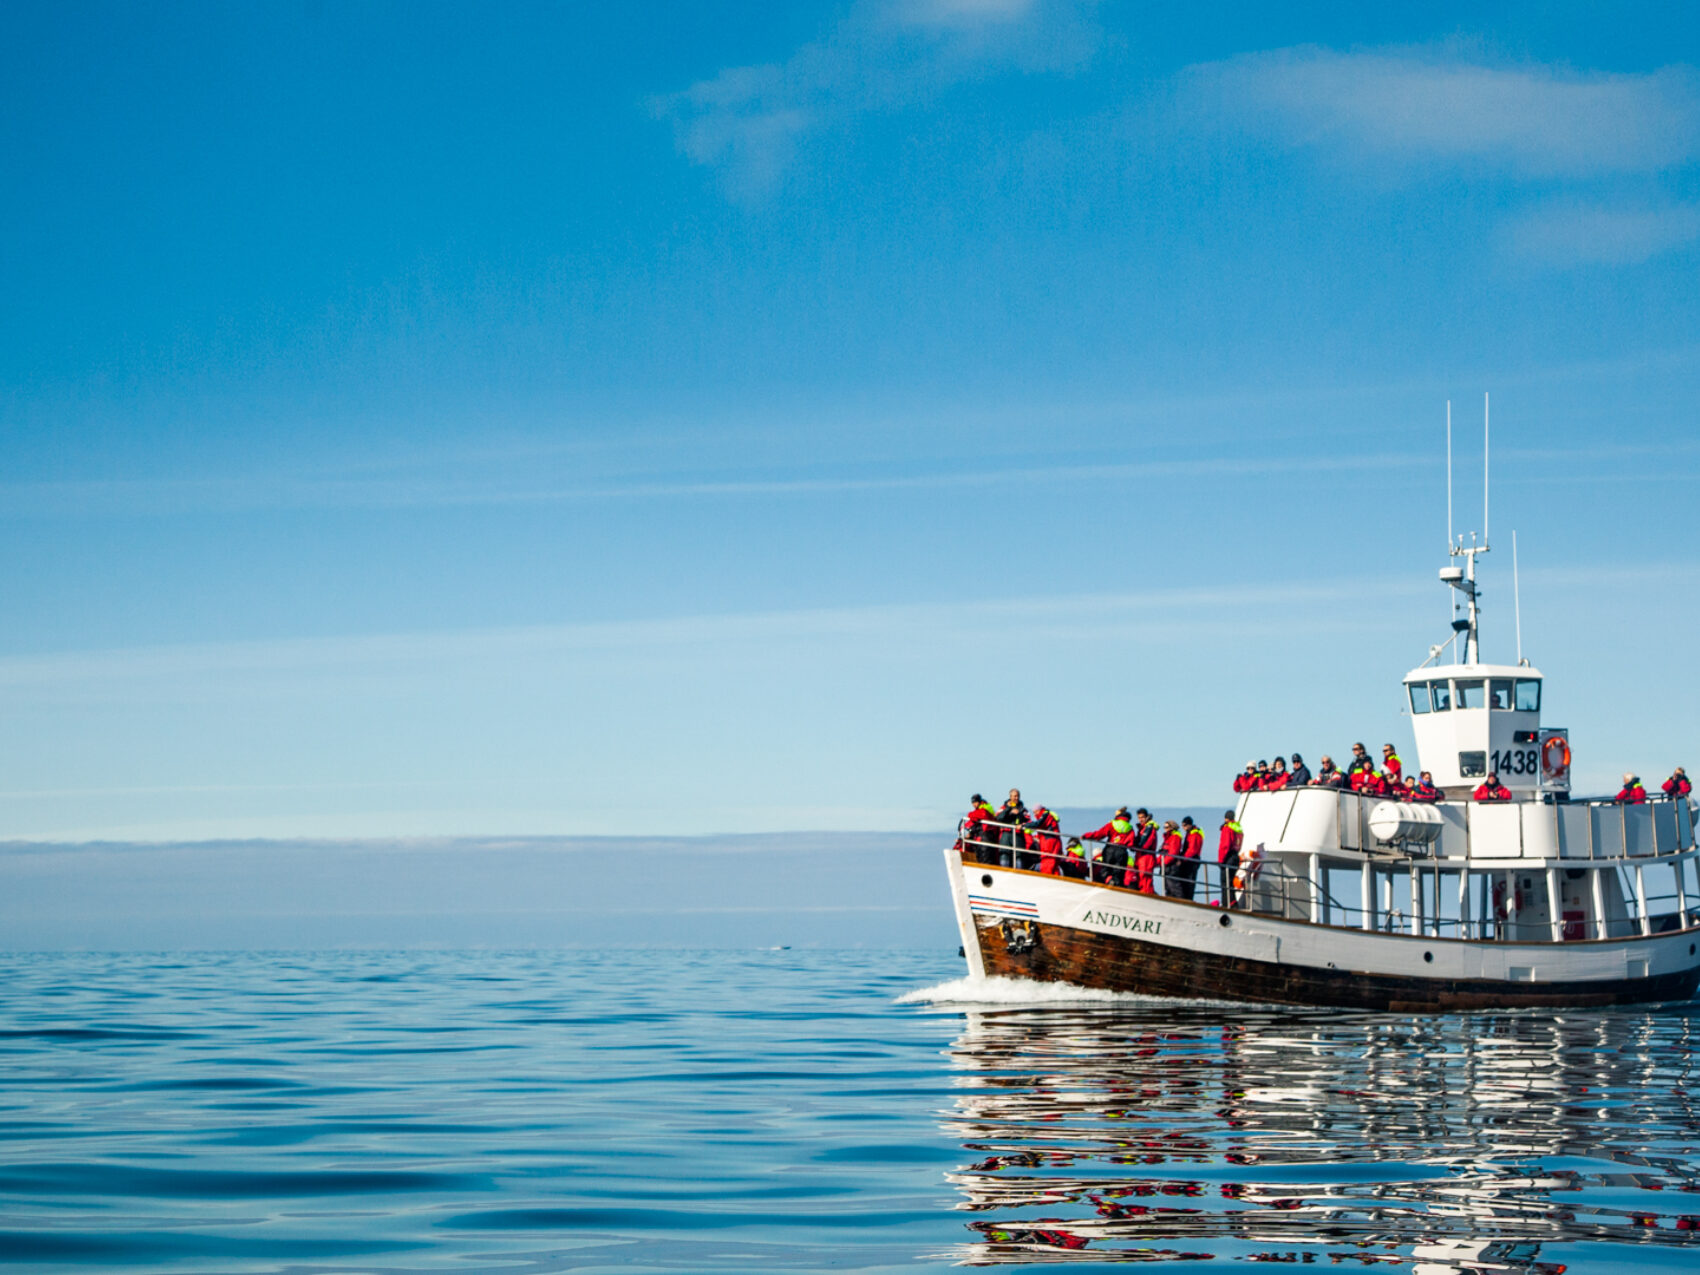 Walbeobachtung Whalewatching Islandreisen Katla Travel Ausflüge Per Boot
Ausflugsboot im Wasser mit vielen Menschen